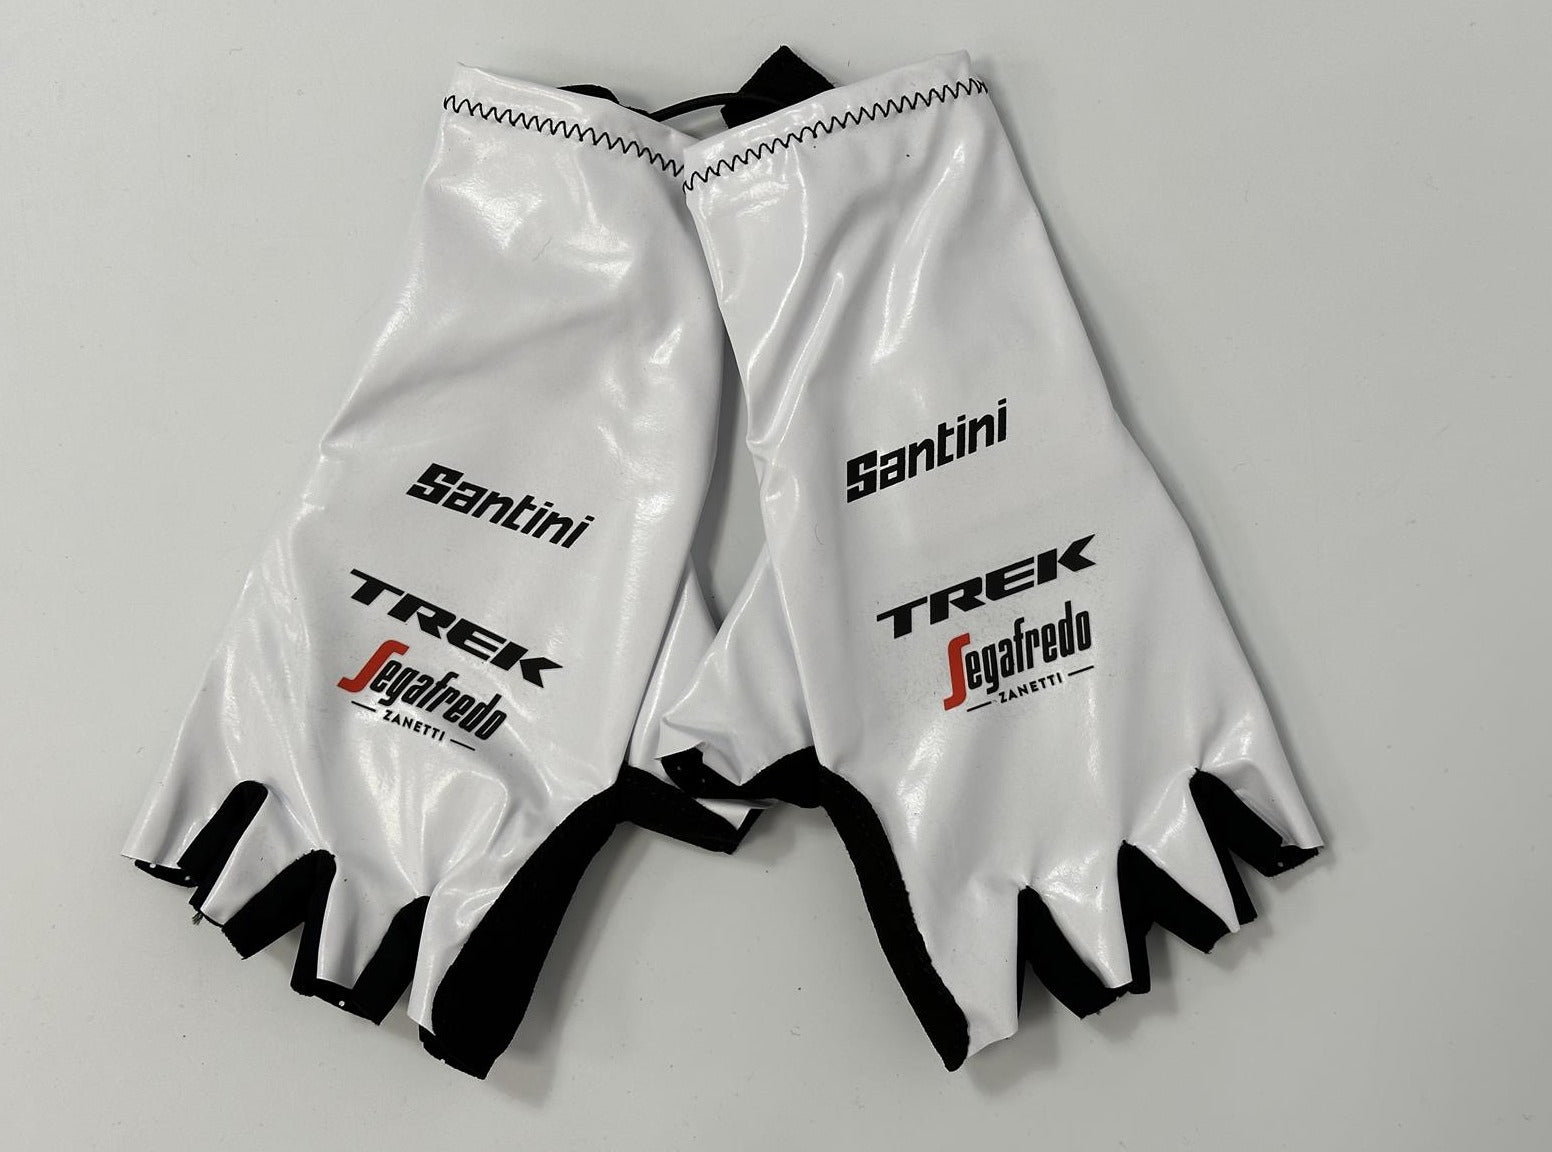 Trek Segafredo TT Gloves by Santini